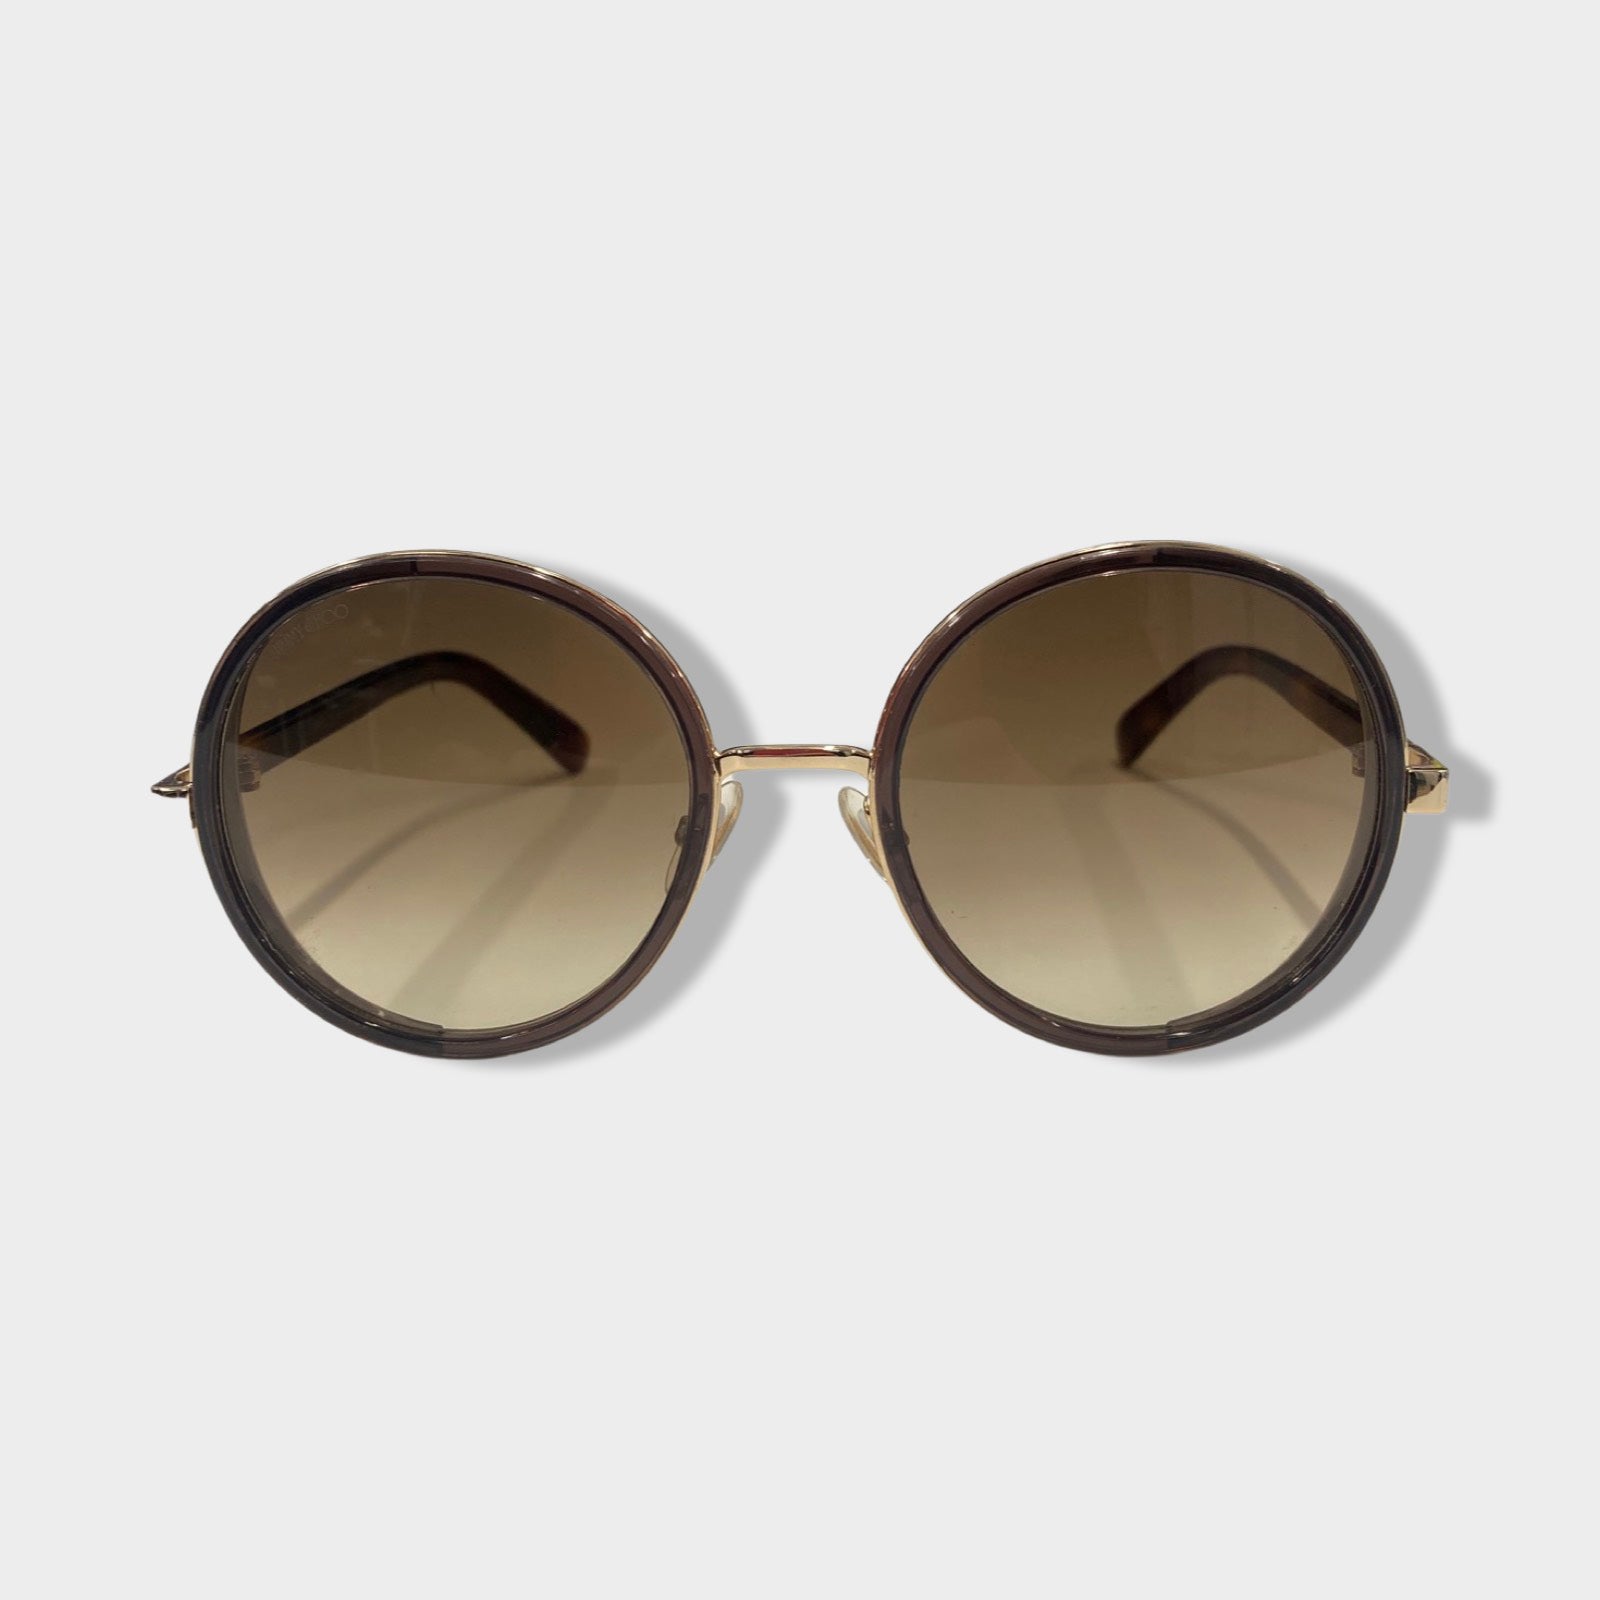 Jimmy Choo Frieda/s women Sunglasses online sale